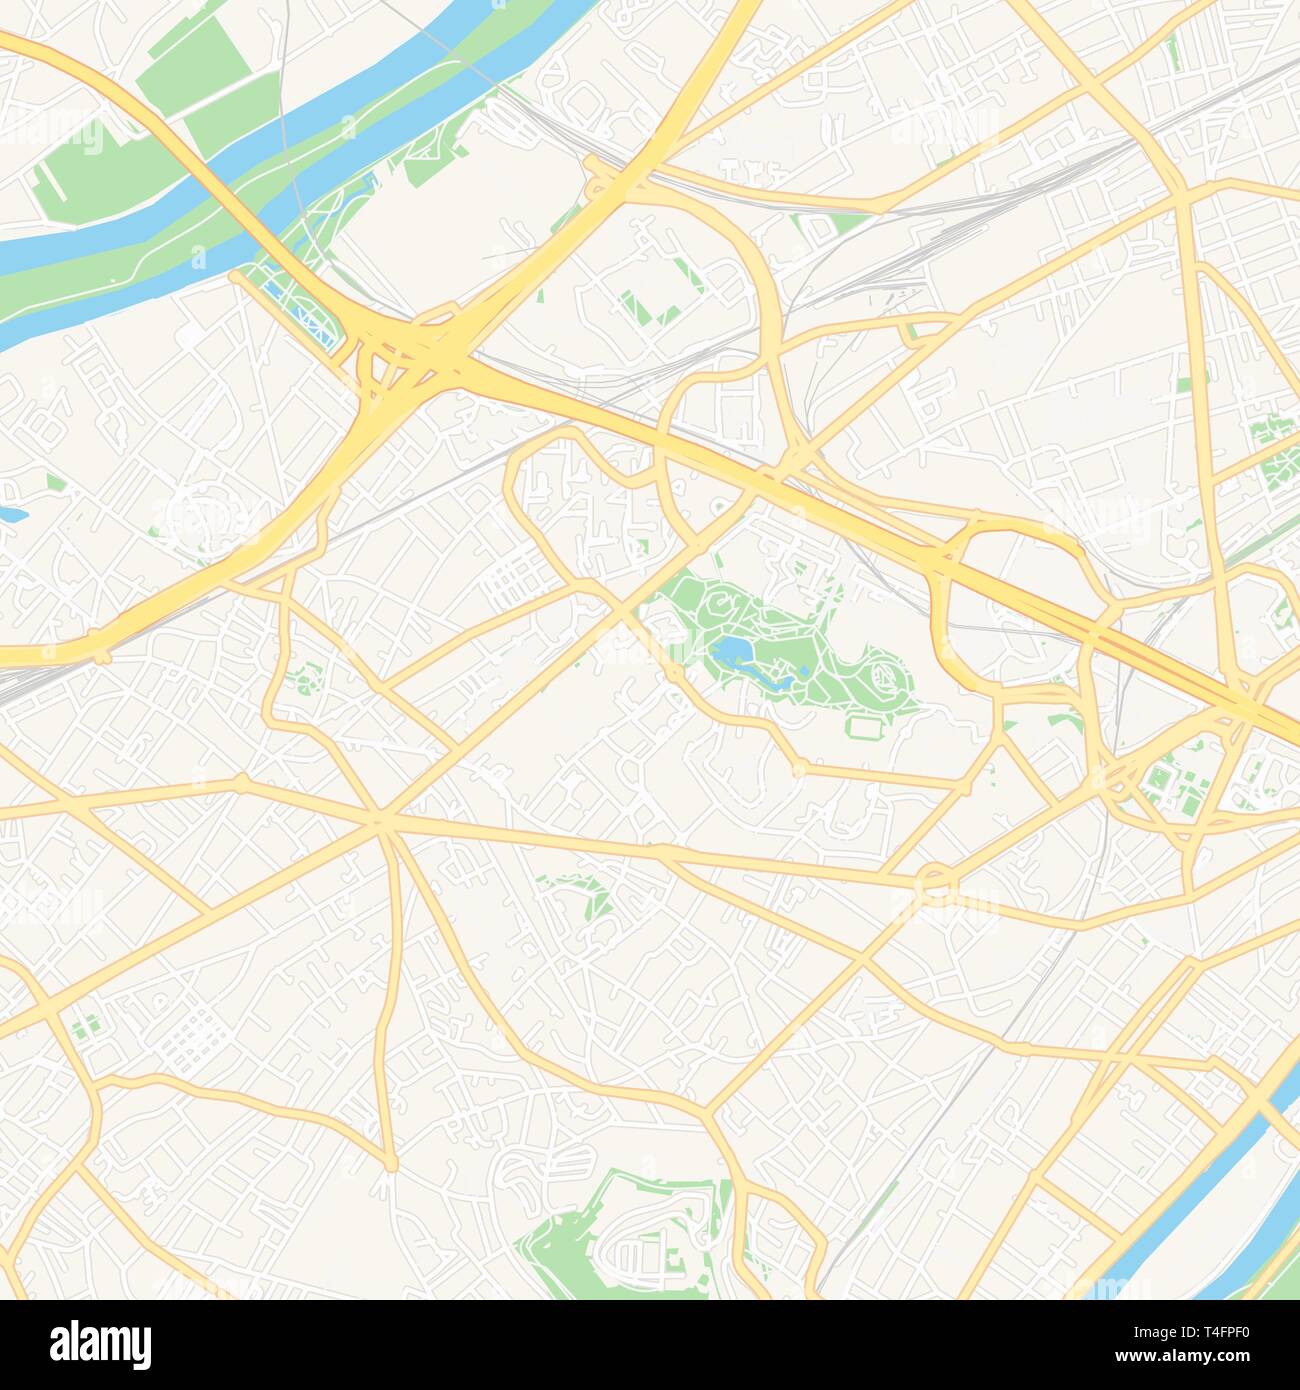 Druckbare Karte von Nanterre, Frankreich mit Haupt- und Nebenstraßen und größere Bahnen. Diese Karte ist sorgfältig für das Routing und die Platzierung von individuell gestalteten Stock Vektor